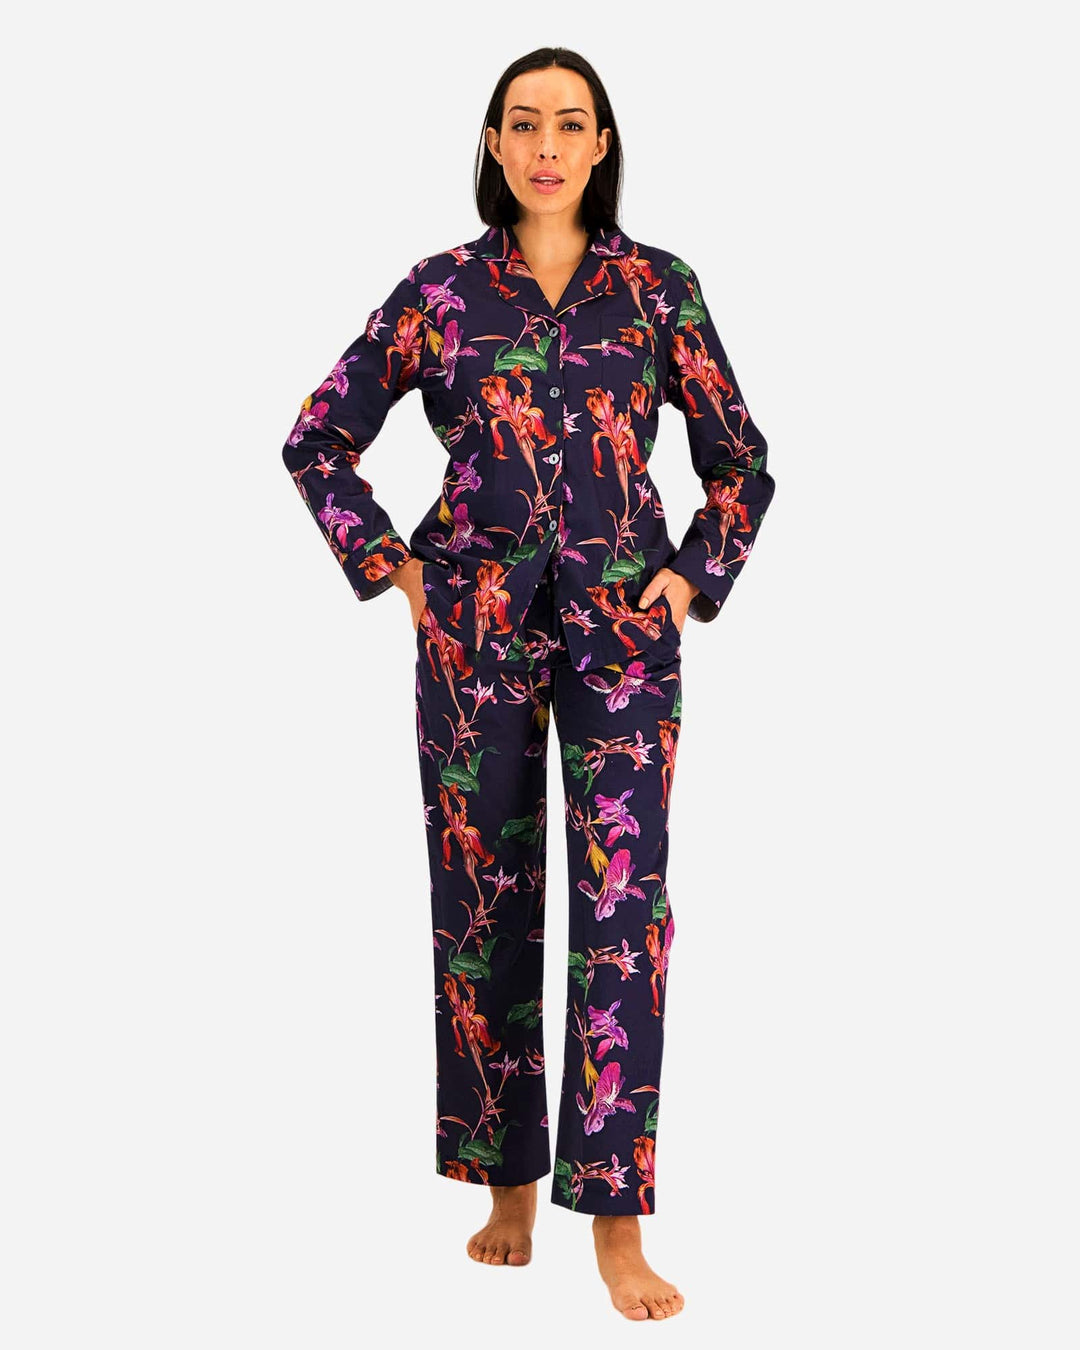 Womens cotton pyjamas set - Navy blue vintage iris flowers